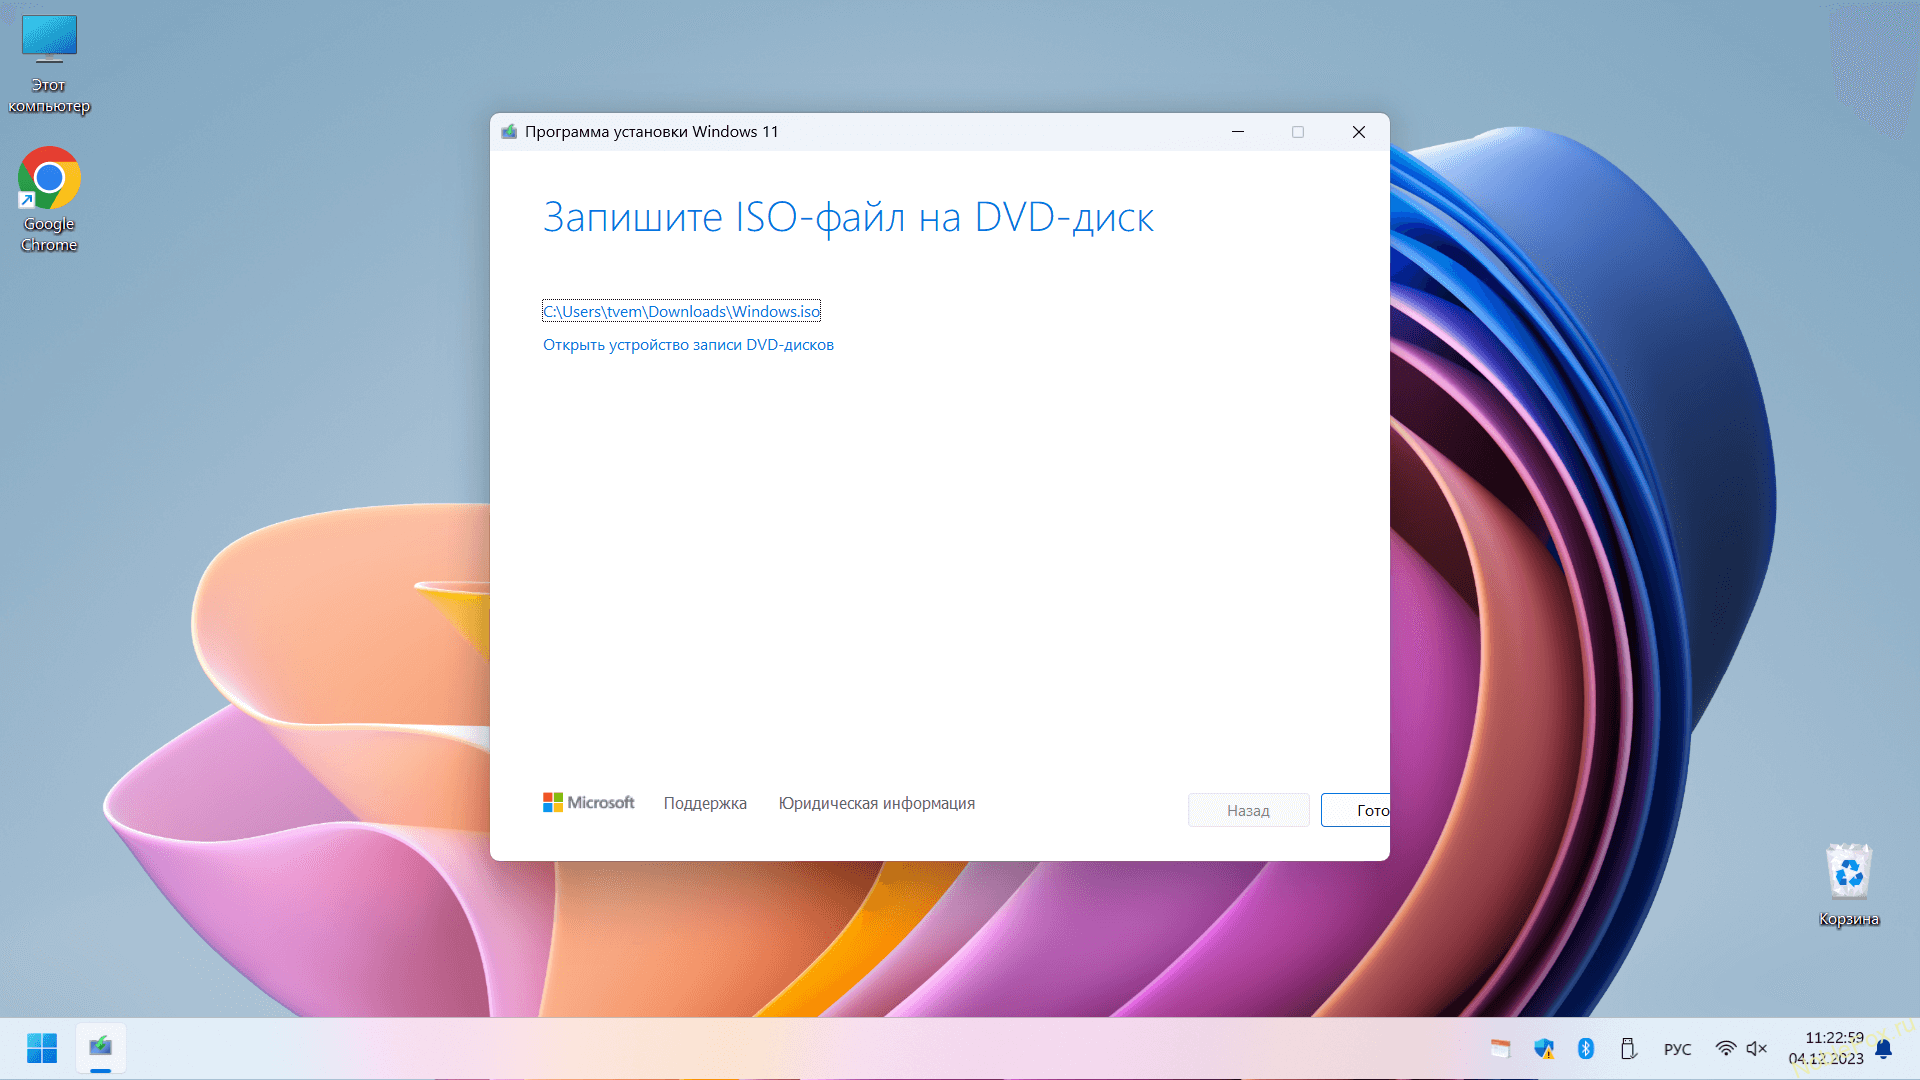 Можно записать на DVD-диск Windows 11 или просто сохранить образ (ISO-файл) на компьютере.